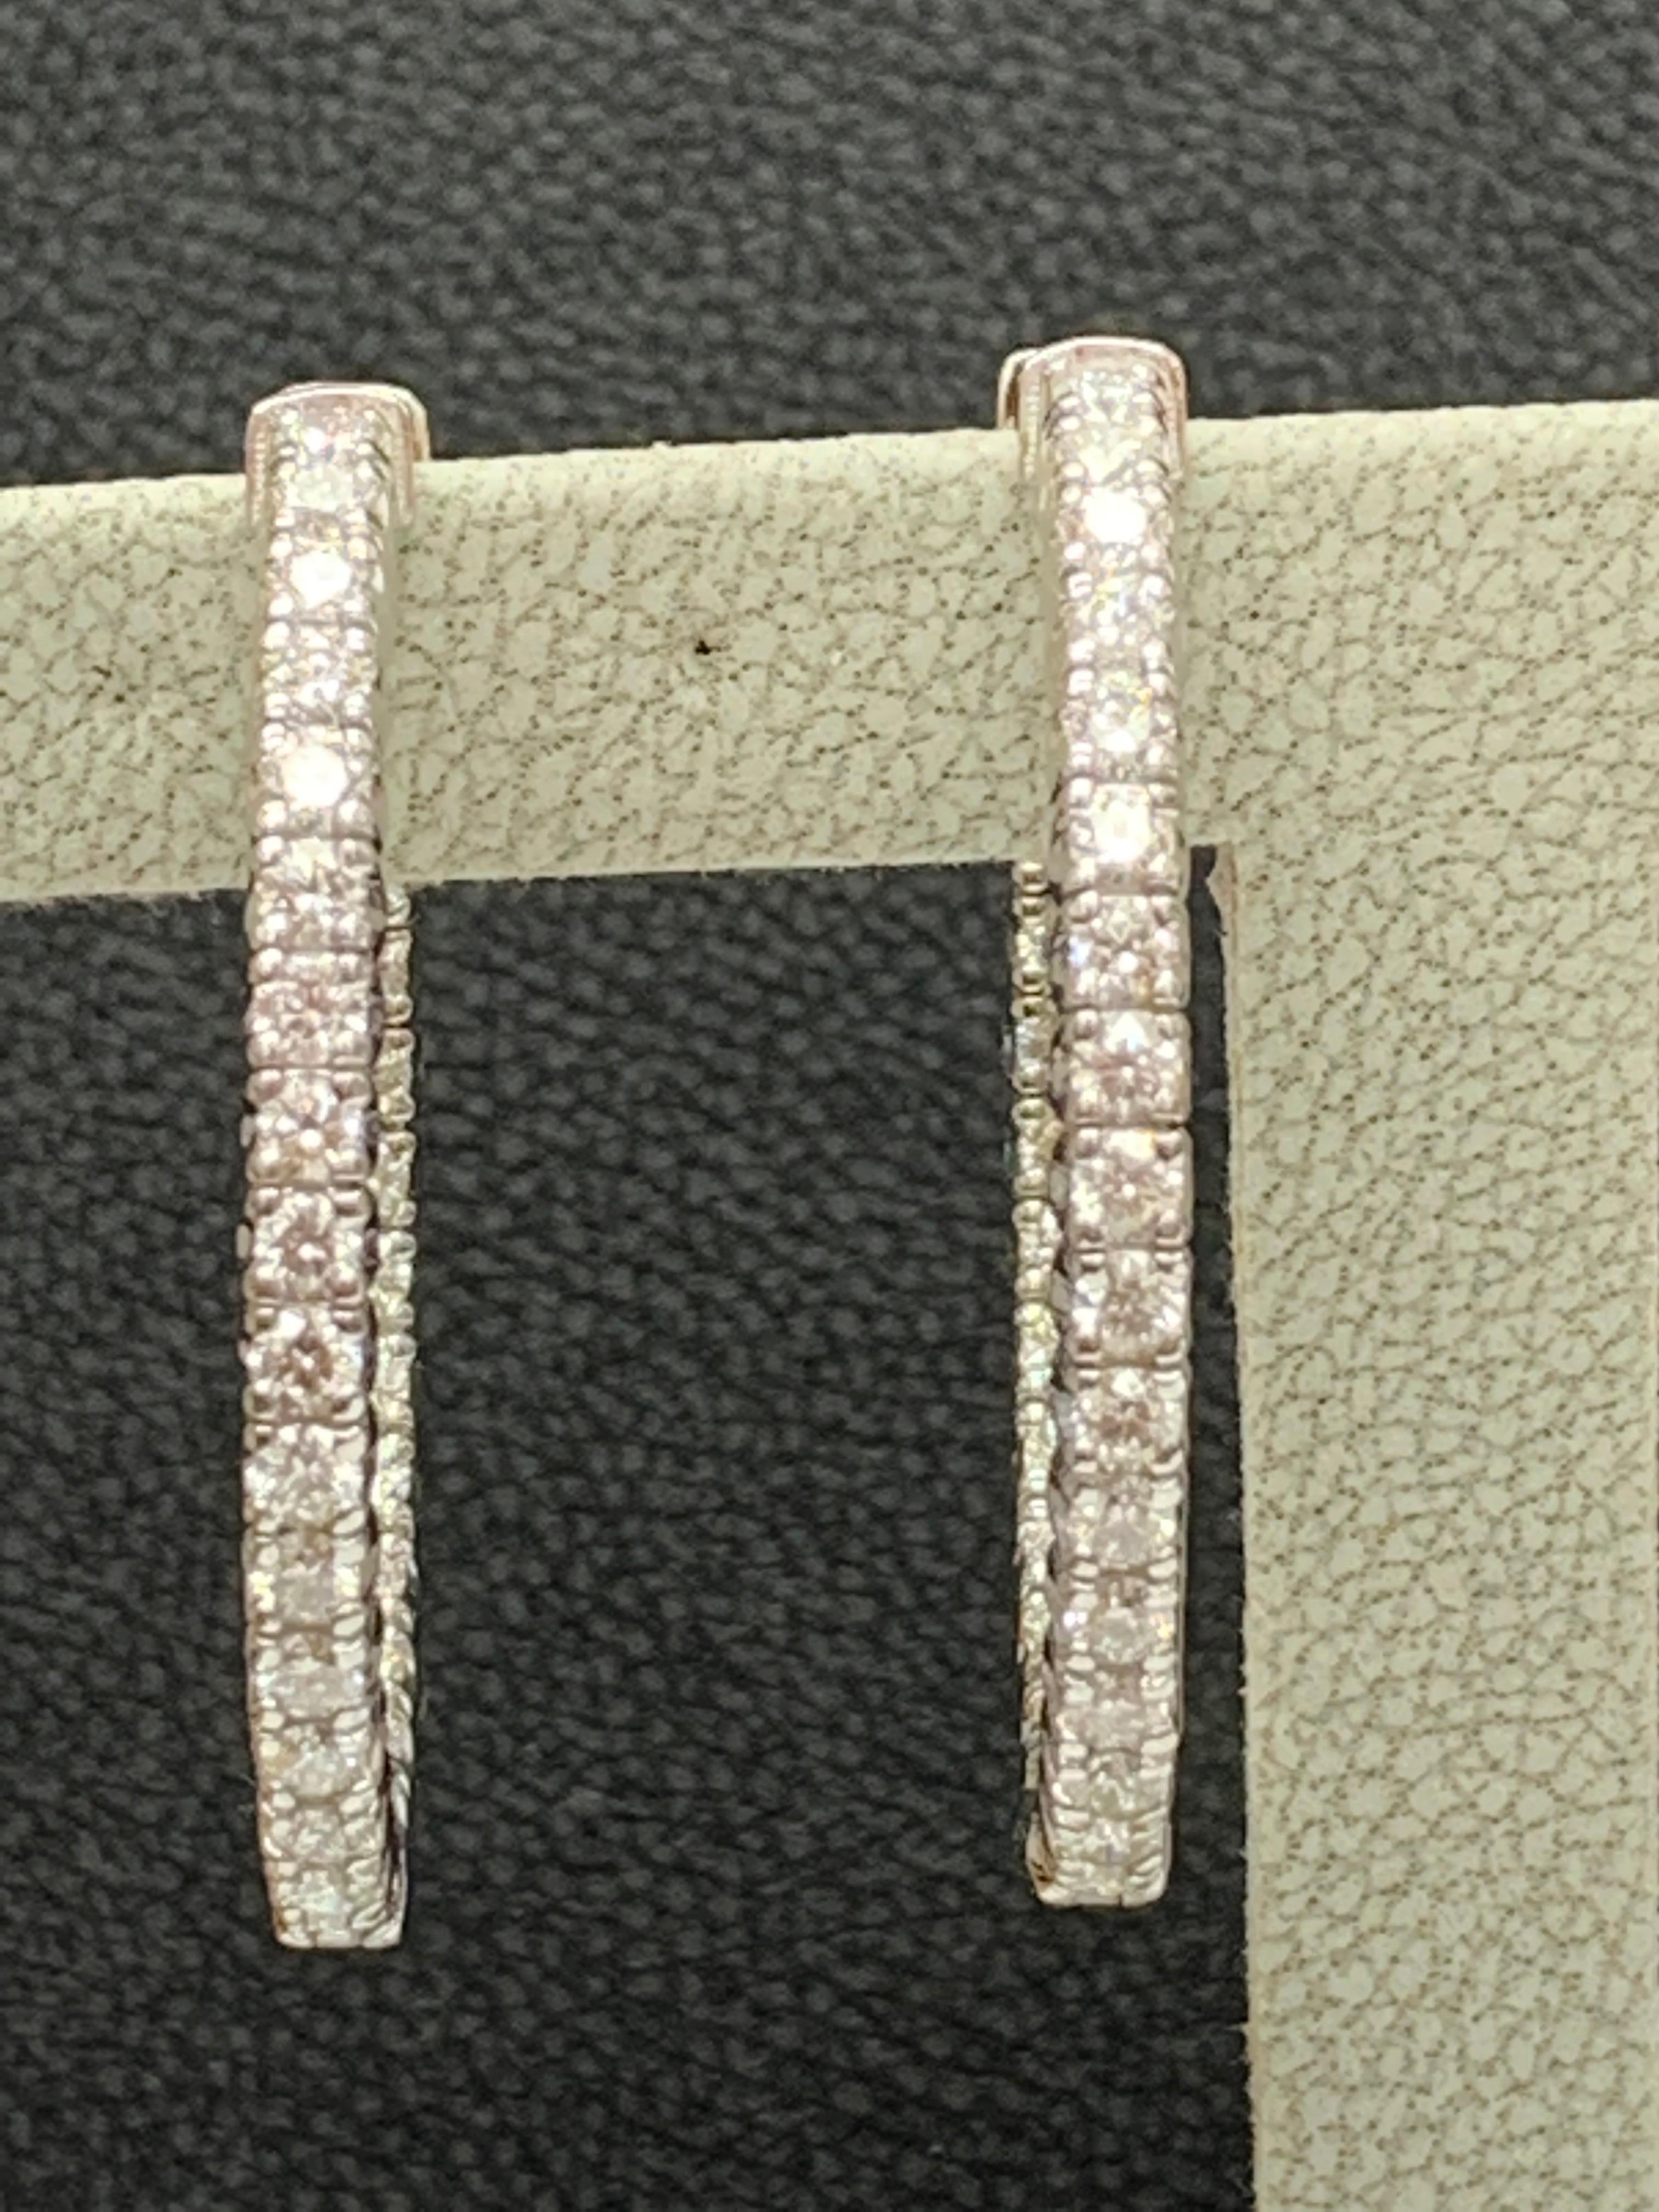 Ein schickes und modisches Paar Creolen mit runden Diamanten im Brillantschliff, gefasst in 14 Karat Weißgold.  58 runde Diamanten wiegen insgesamt 2,88 Karat. Ein schönes Schmuckstück.
Alle Diamanten sind GH Farbe SI1 Klarheit.
Style ist in